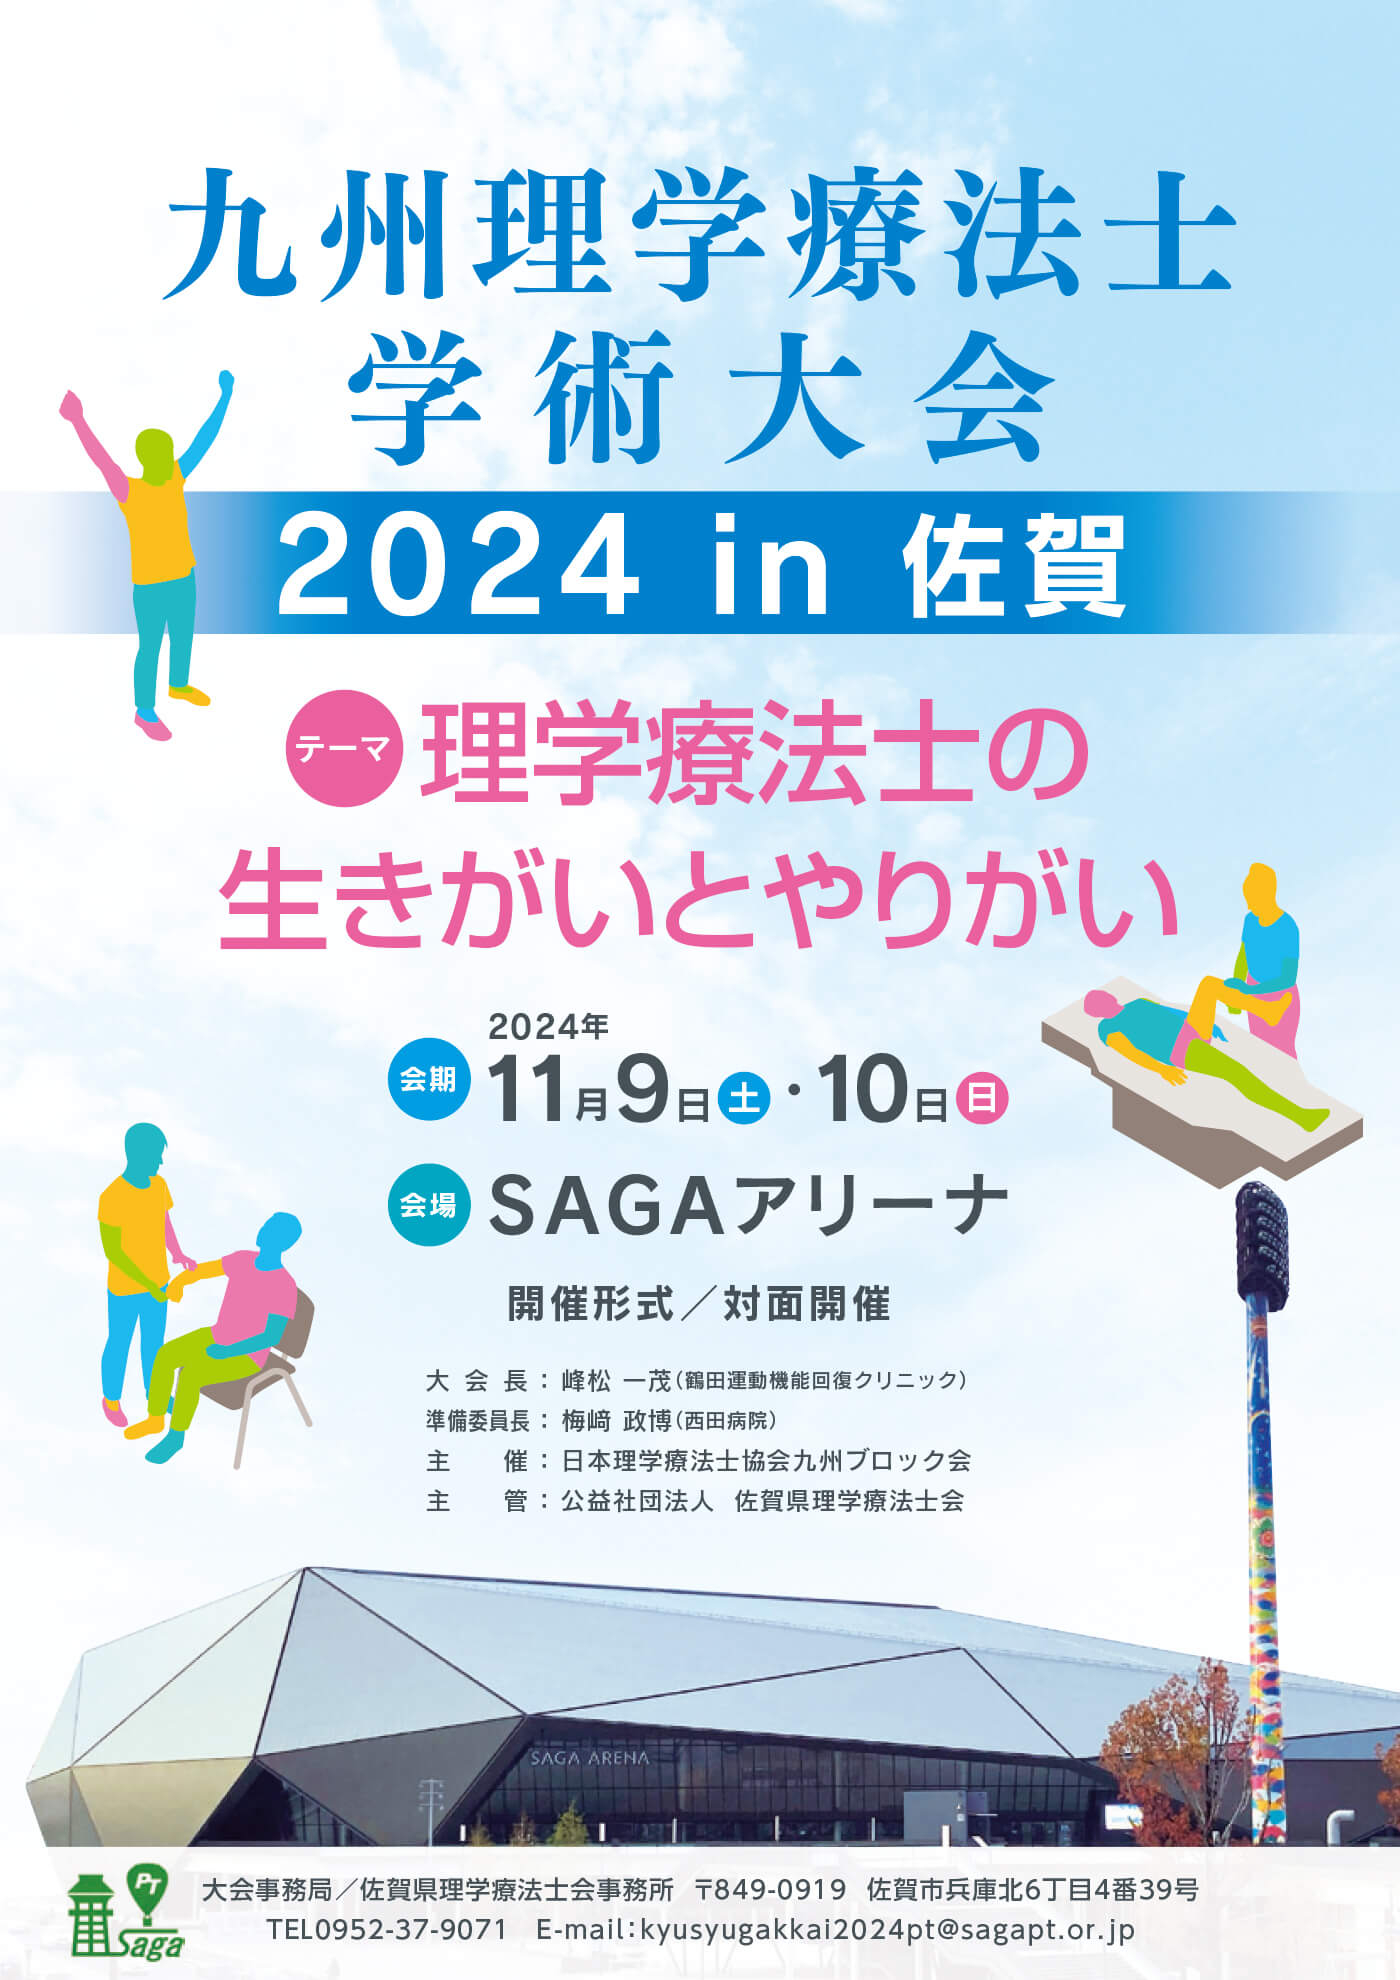 九州理学療法士学術大会2024 in佐賀開催のお知らせ1